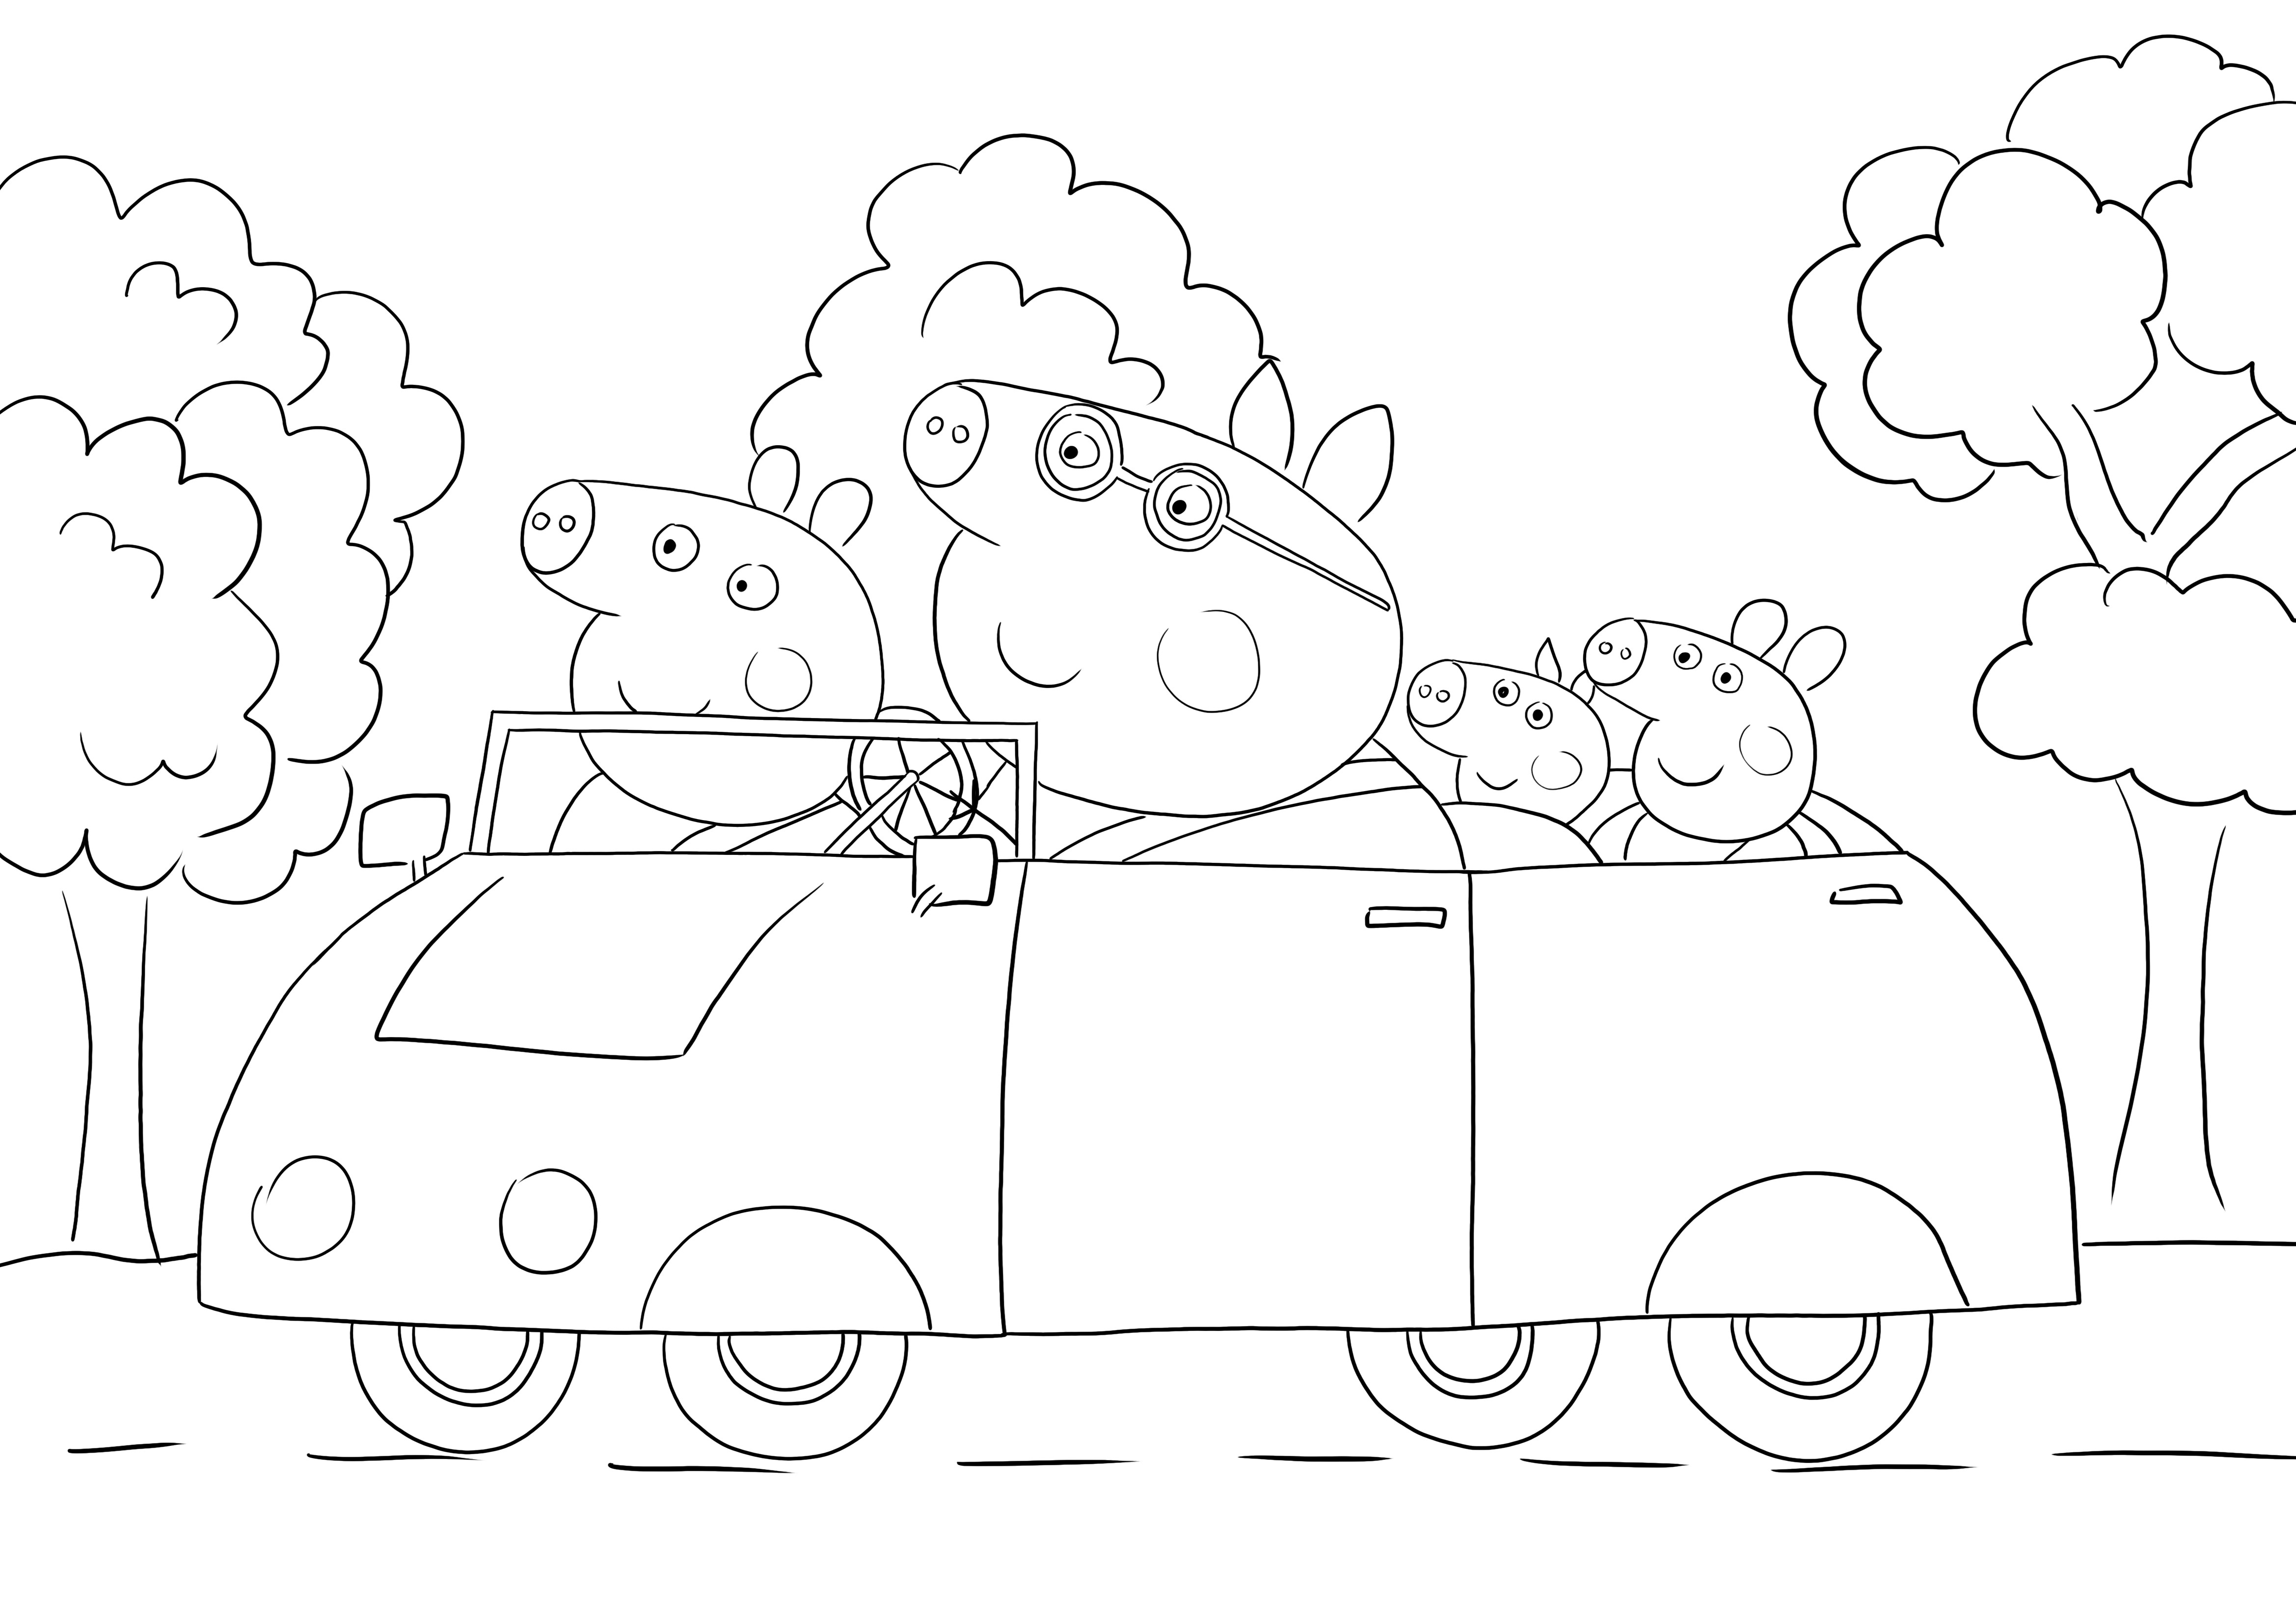 Peppa ve ailesi, çocuklar için renklendirmek için arabaya binmeden yazdırılabilir bir sayfaya gidiyor